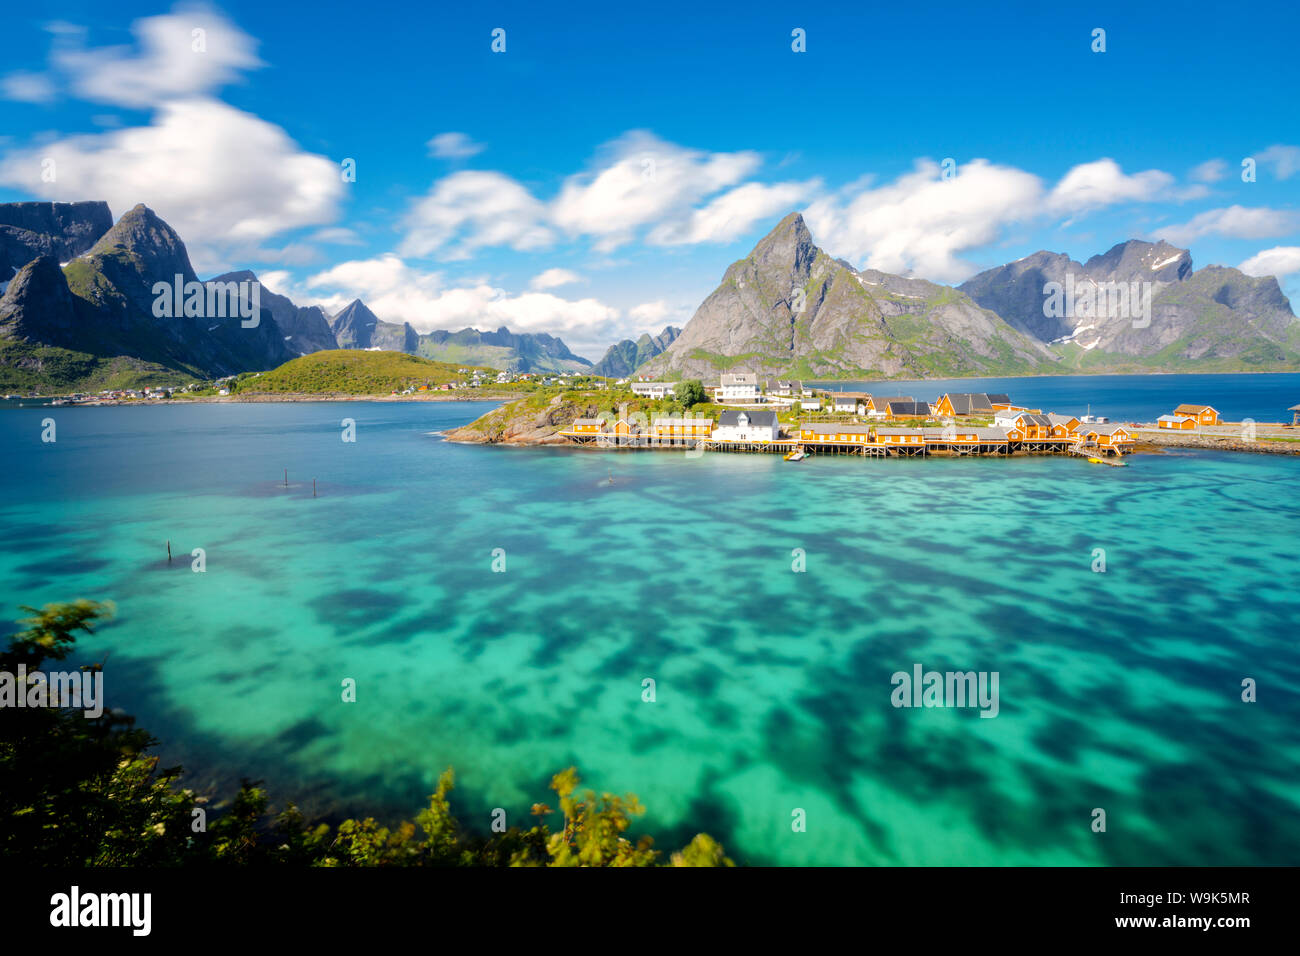 La mer turquoise entoure le typique village de pêcheurs entouré de pics rocheux, Sakrisoy, Reine, Moskenesoya, îles Lofoten, Norvège, Scandinavie Banque D'Images